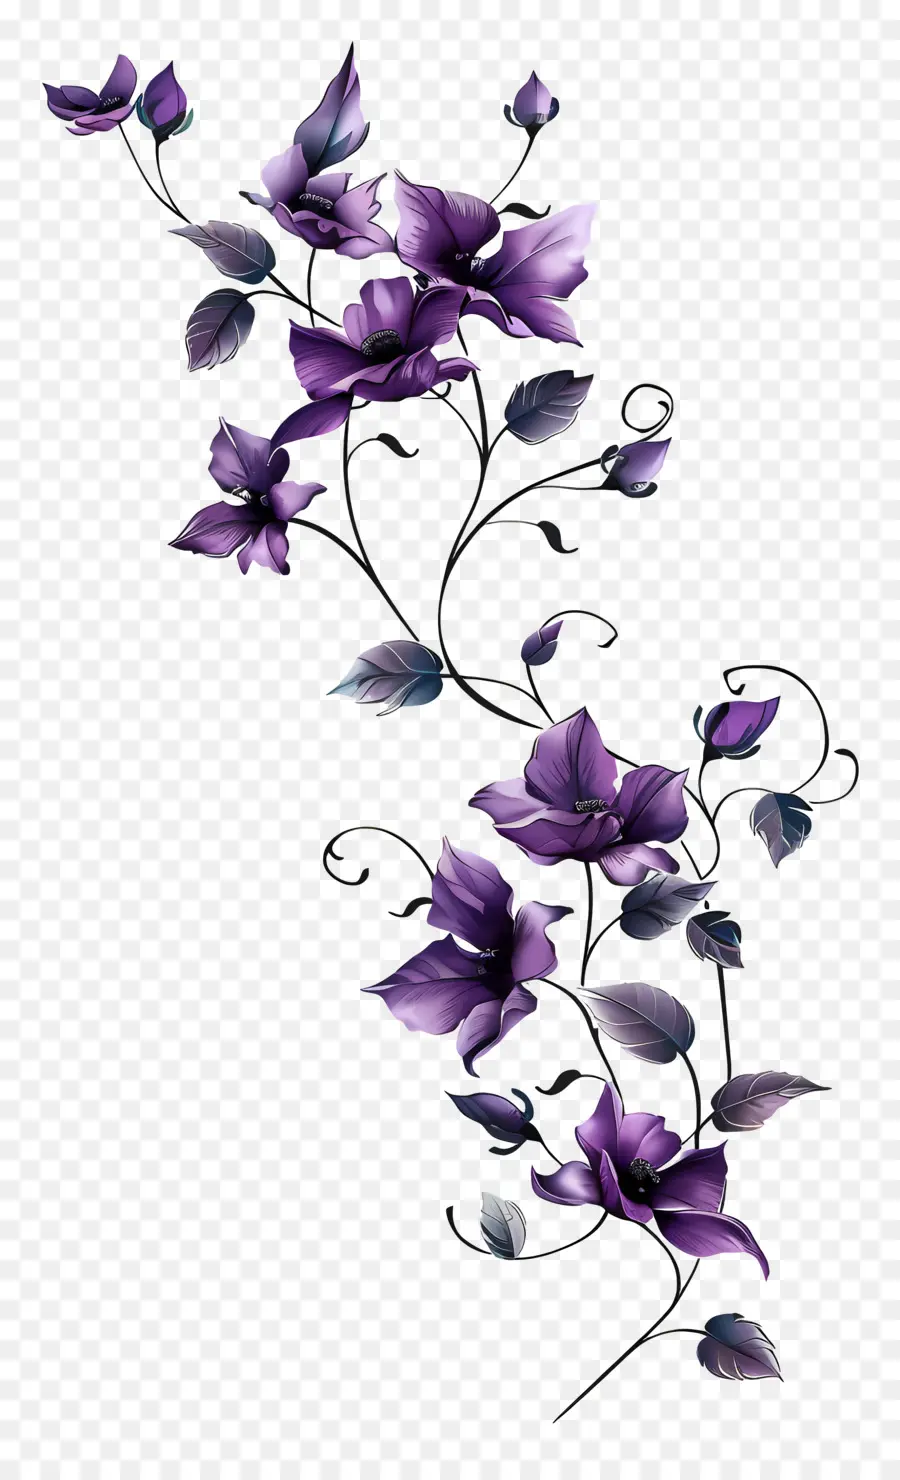 Hoa Vine hoa màu tím Bouquet Cánh hoa hình trái tim - Bouquet thanh lịch của những bông hoa hình trái tim màu tím